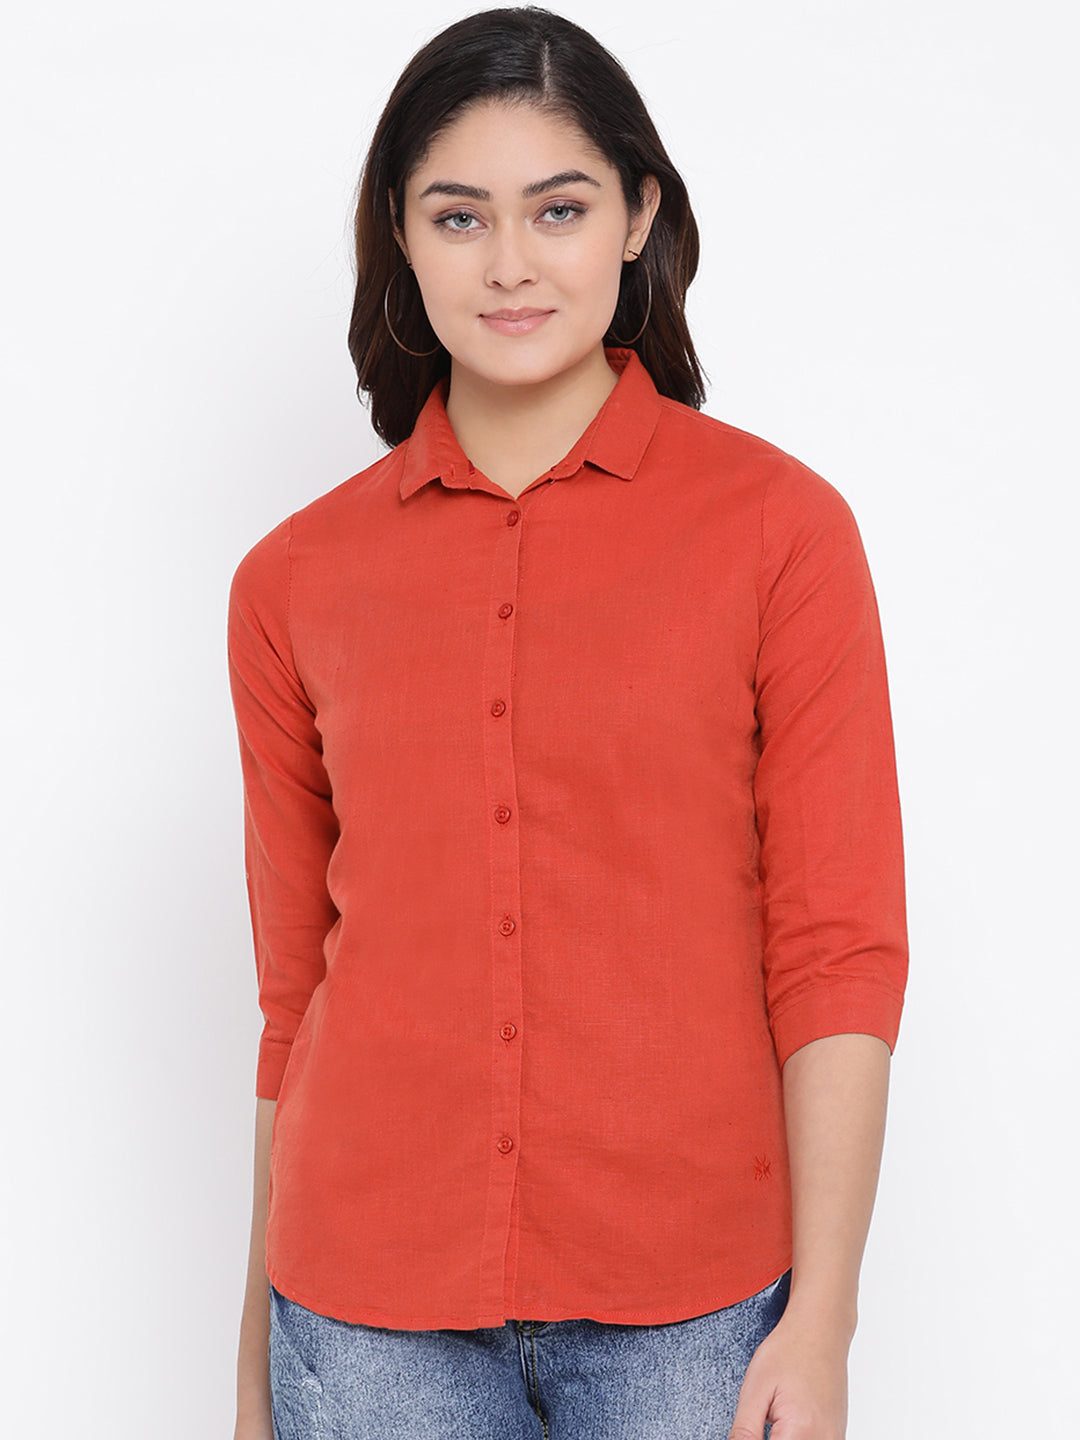 Red Slim Fit Linen Shirt - Women Shirts